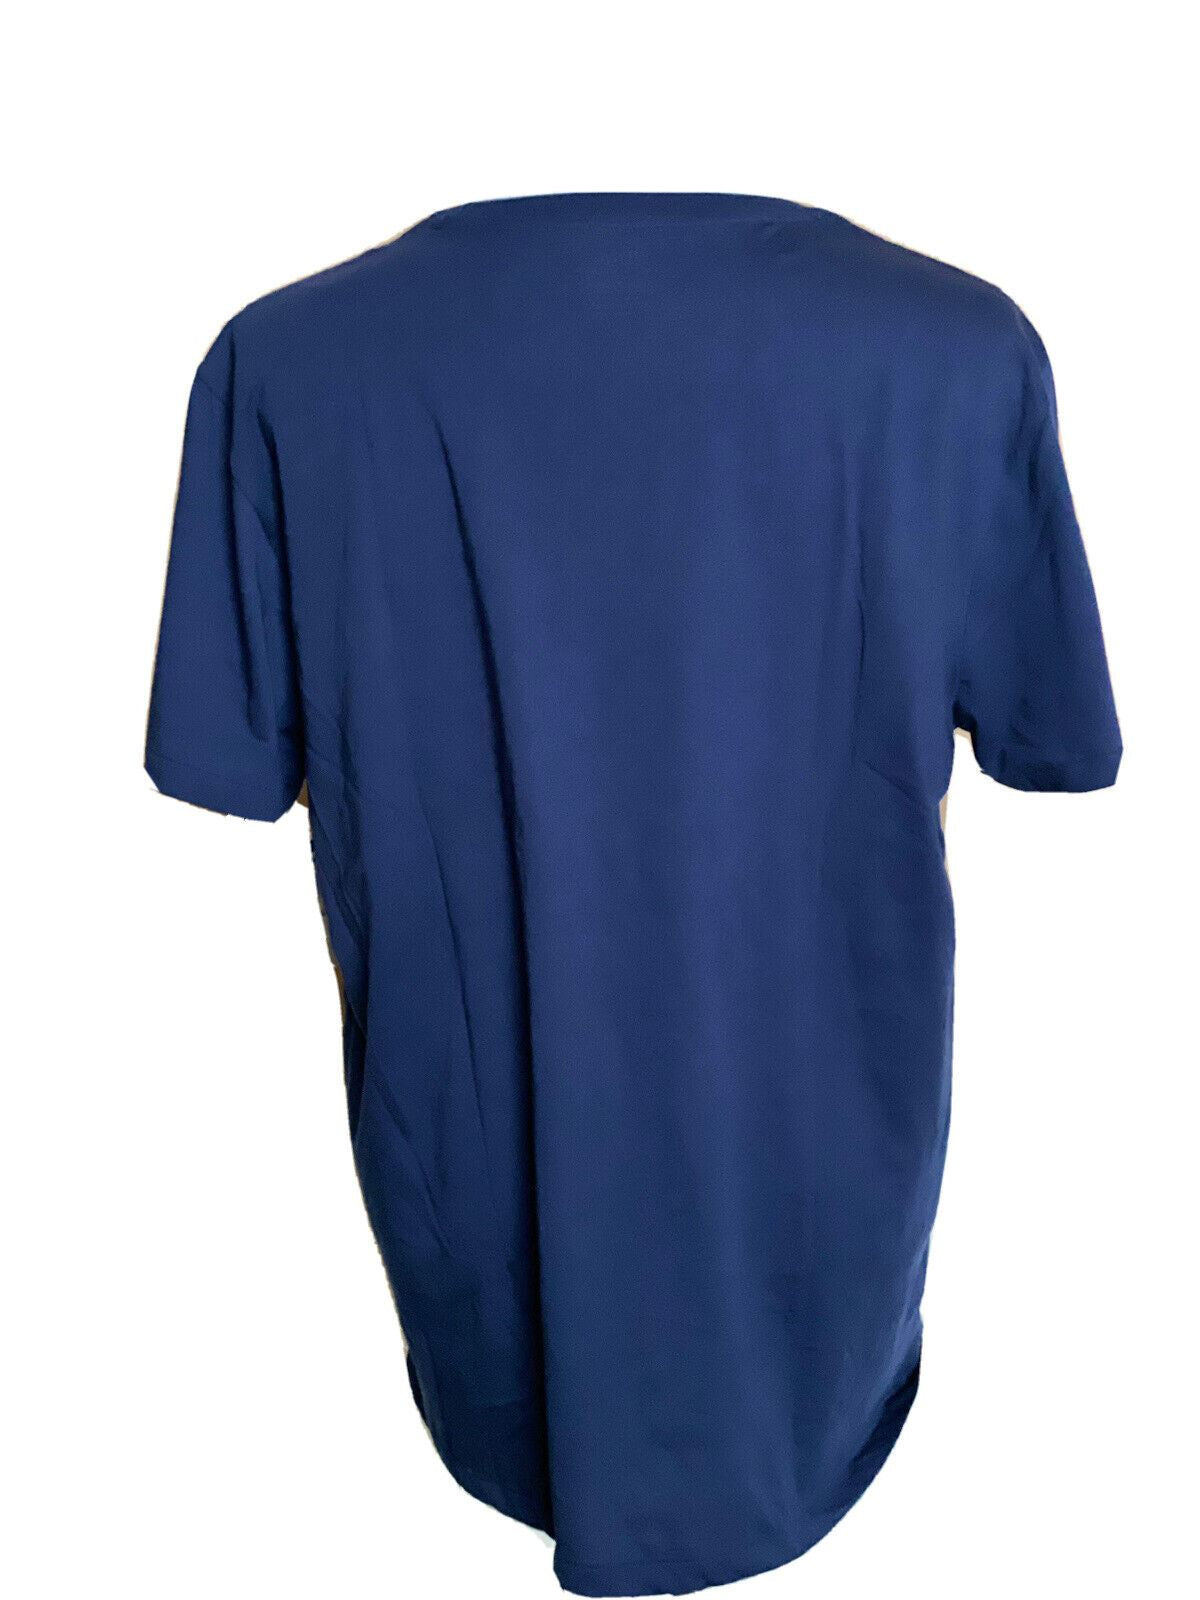 NWT Polo Ralph Lauren Short Sleeve Logo T-shirt Blue XL